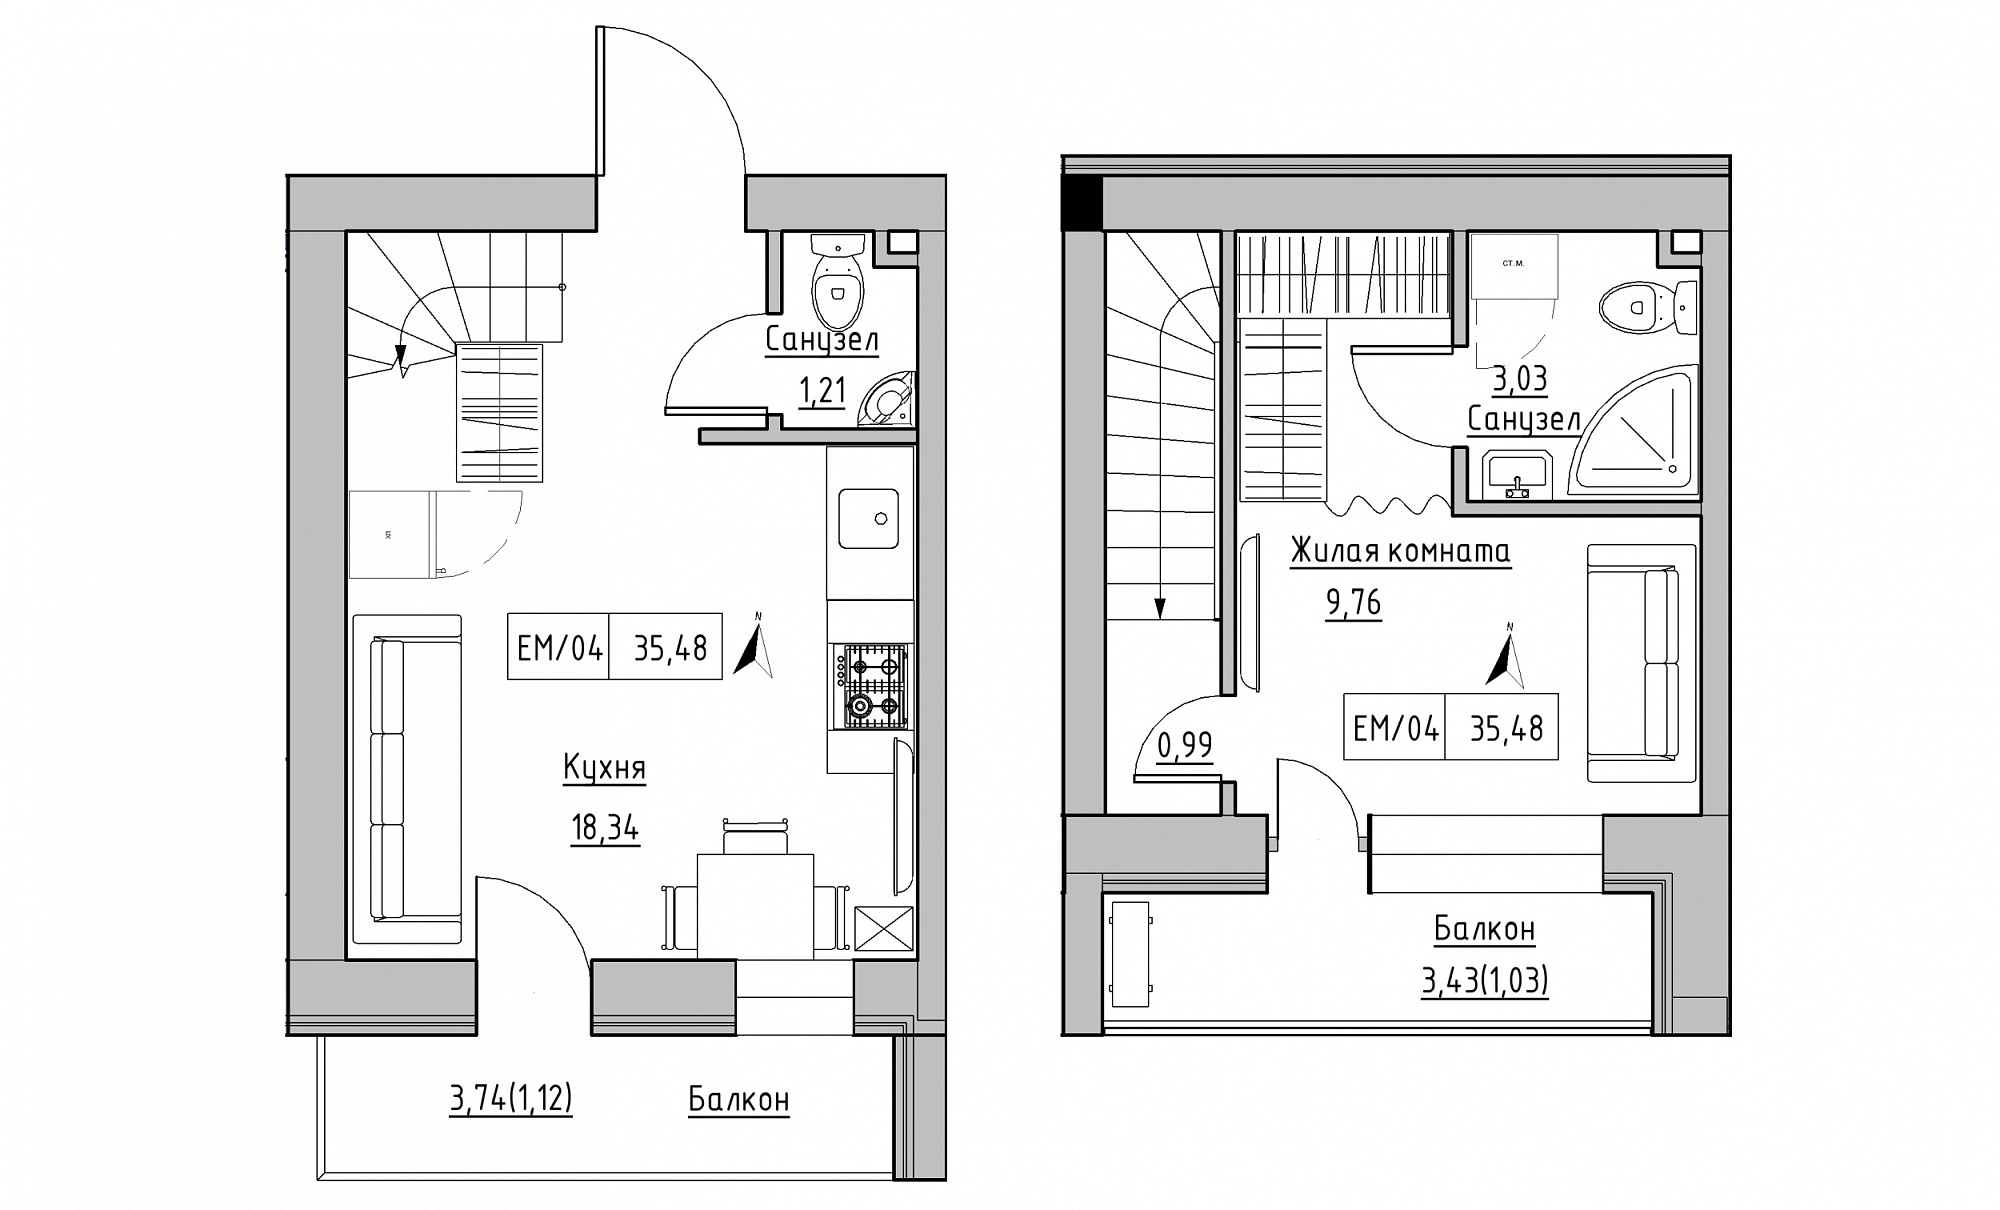 Planning 2-lvl flats area 35.48m2, KS-015-05/0014.